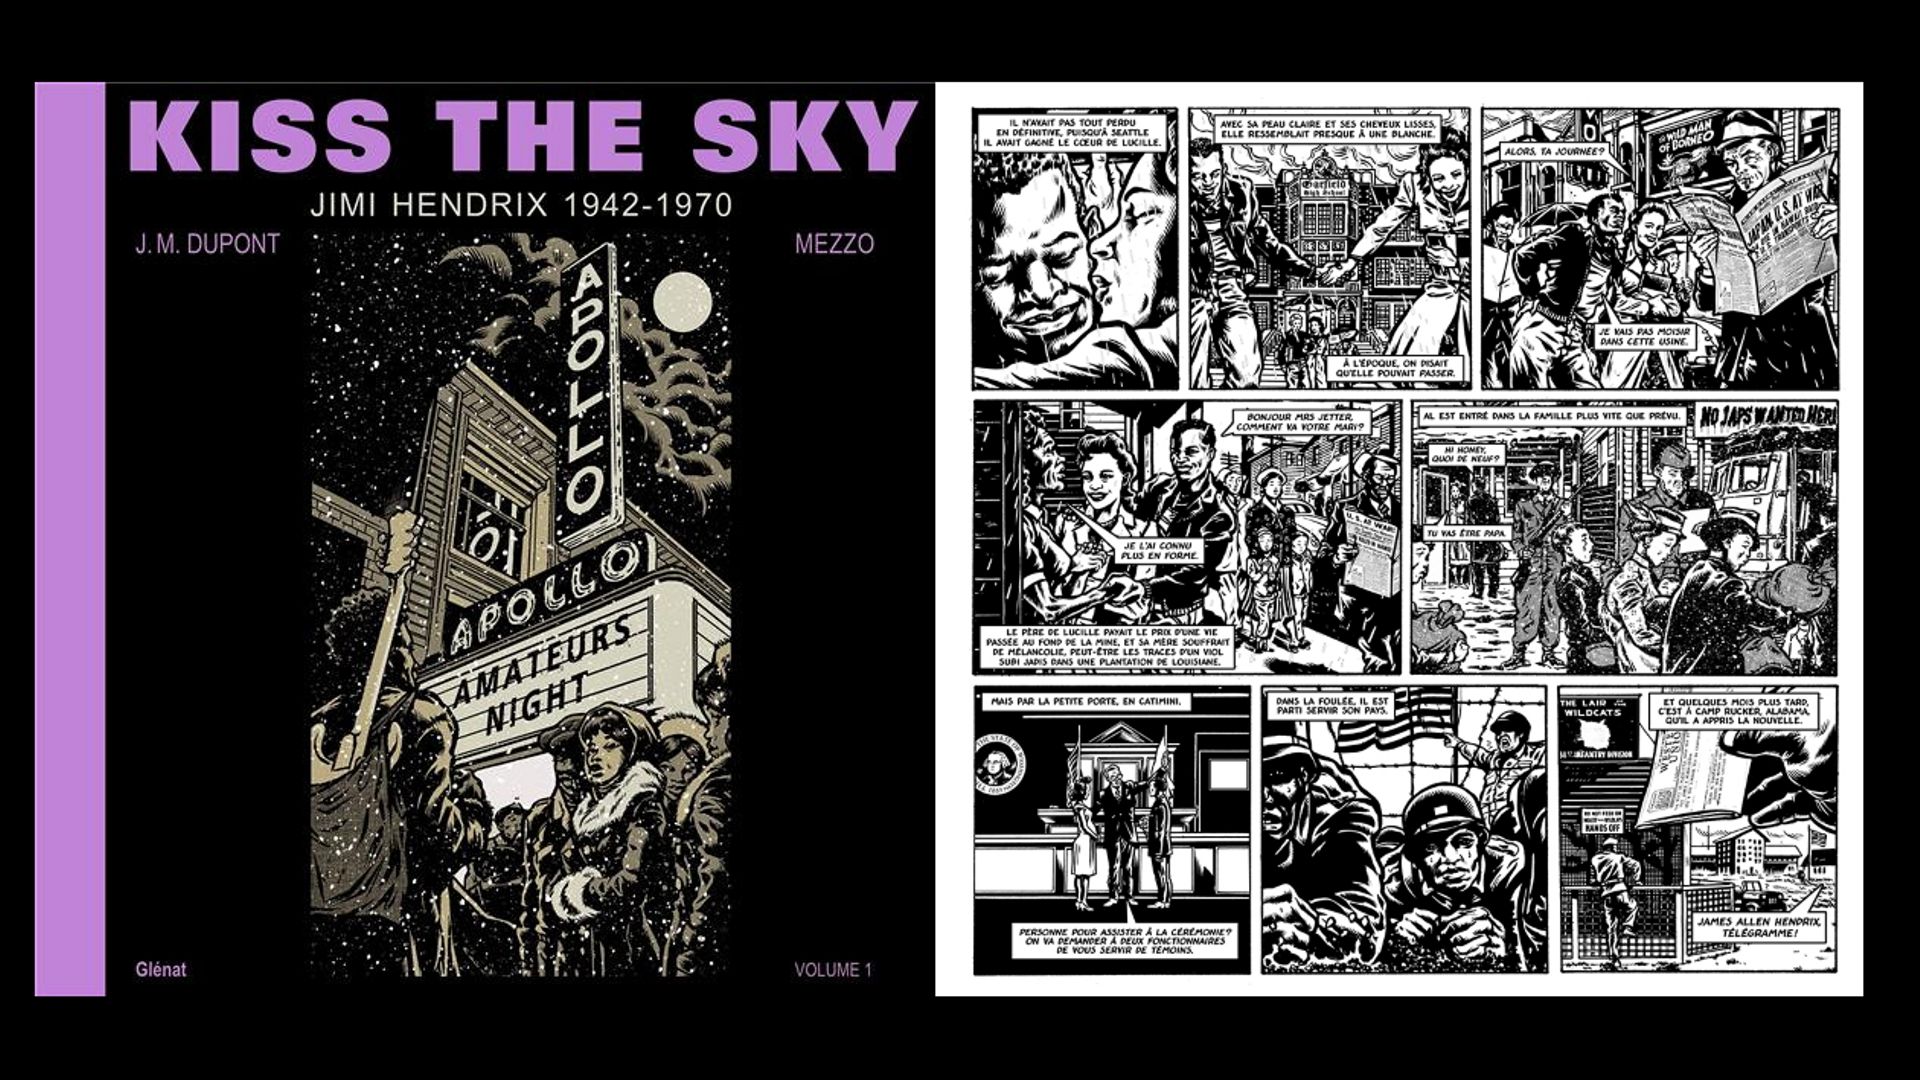 ''Kiss the sky, Jimi Hendrix 1942-1970, Volume 1'', chez Glénat